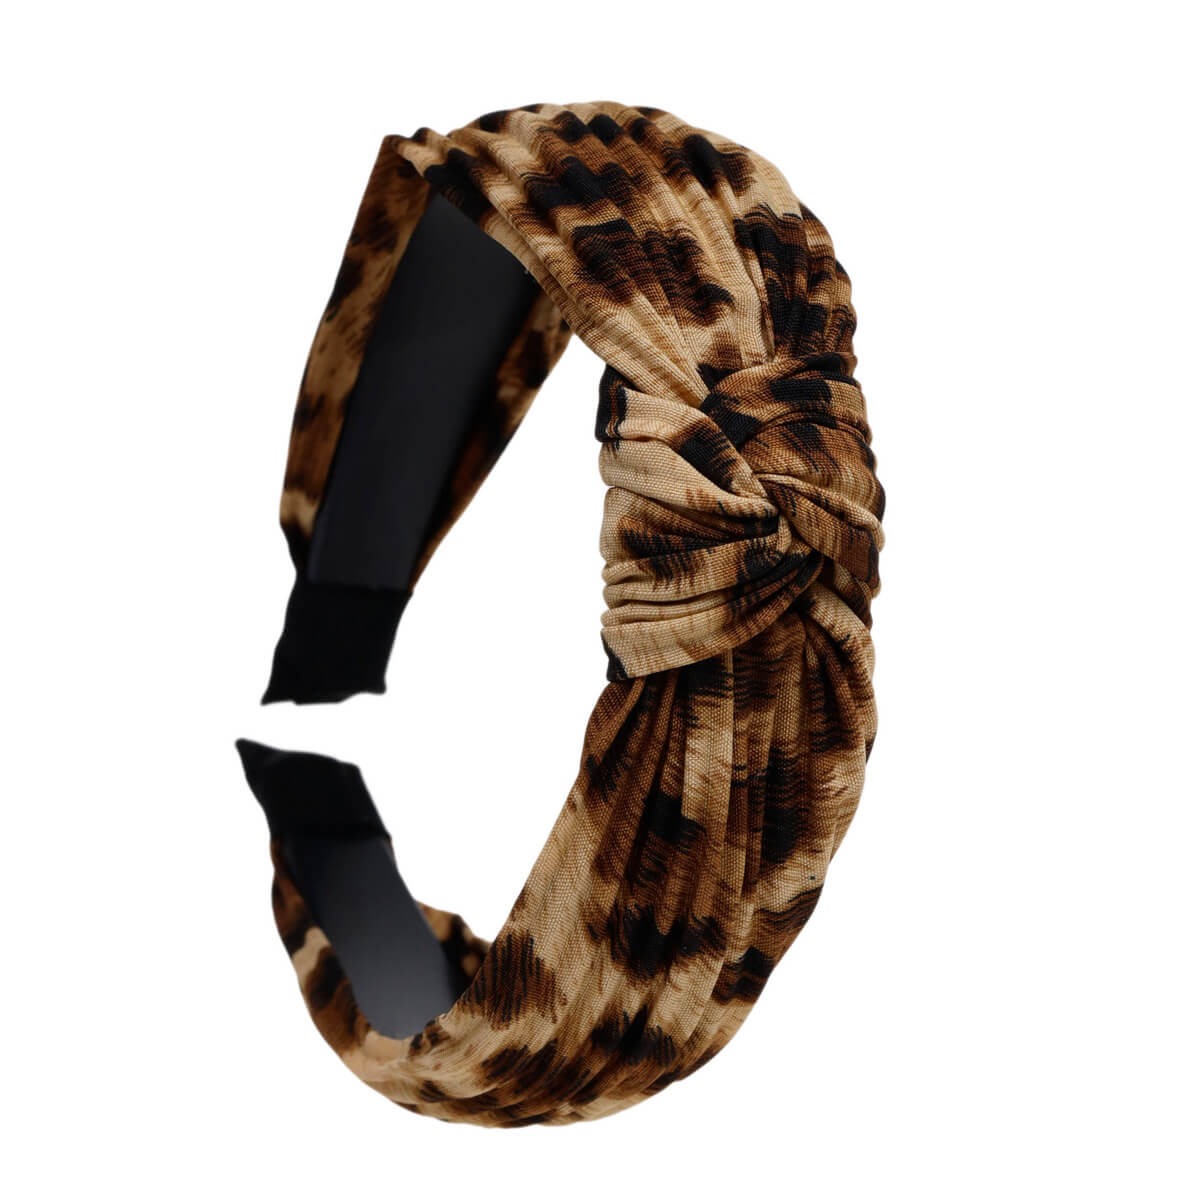 Plissé animal hairband with knot 2,9cm